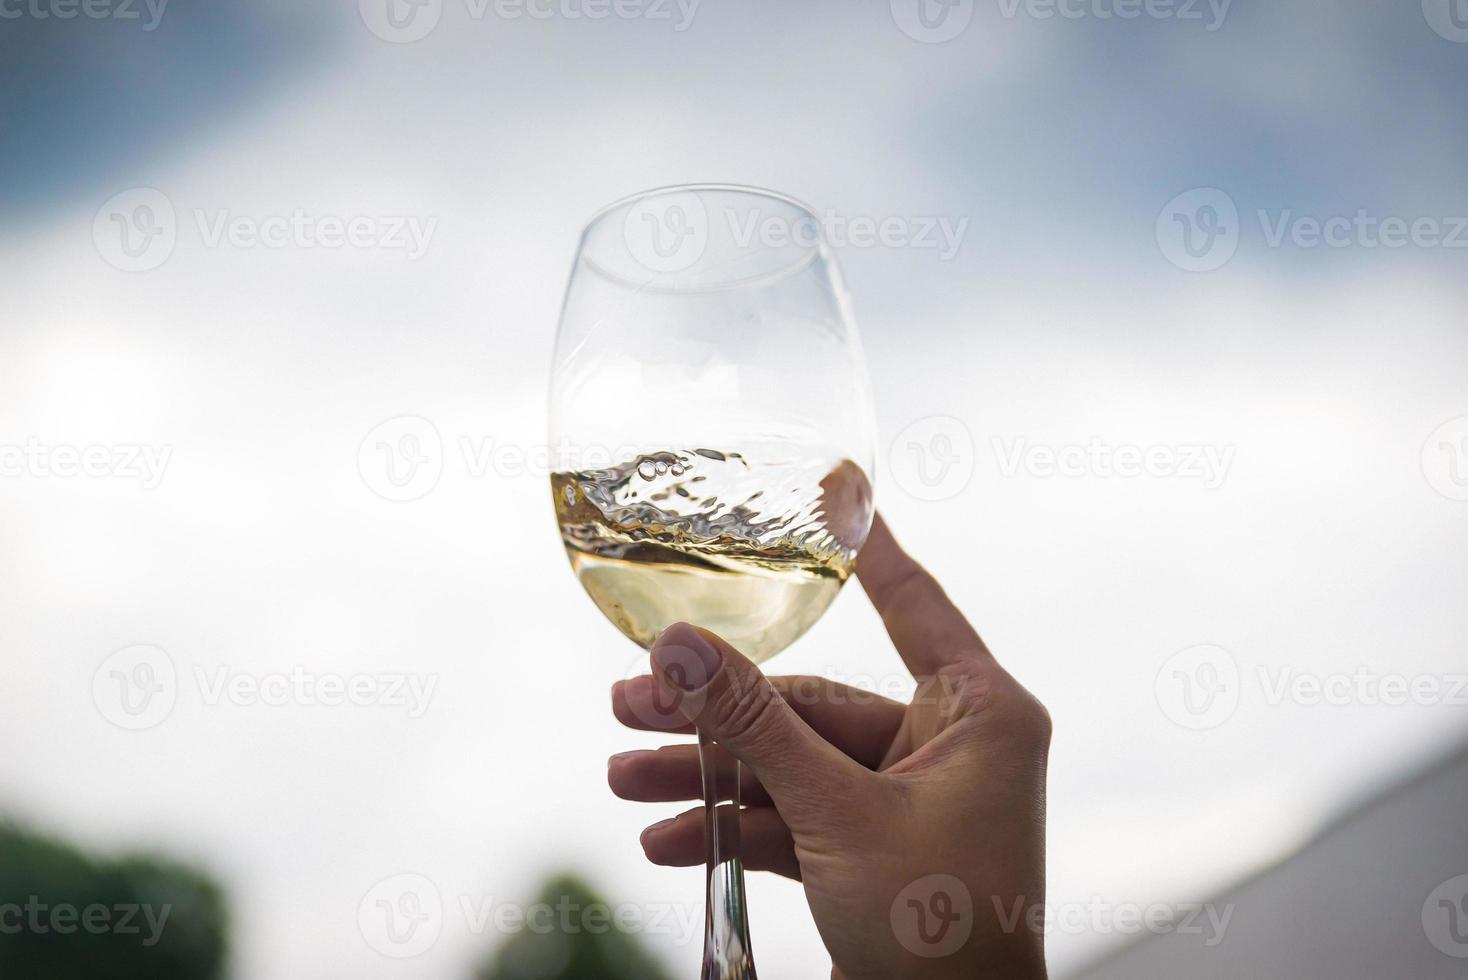 pessoas tilintando copos com vinho no terraço de verão do café ou restaurante foto